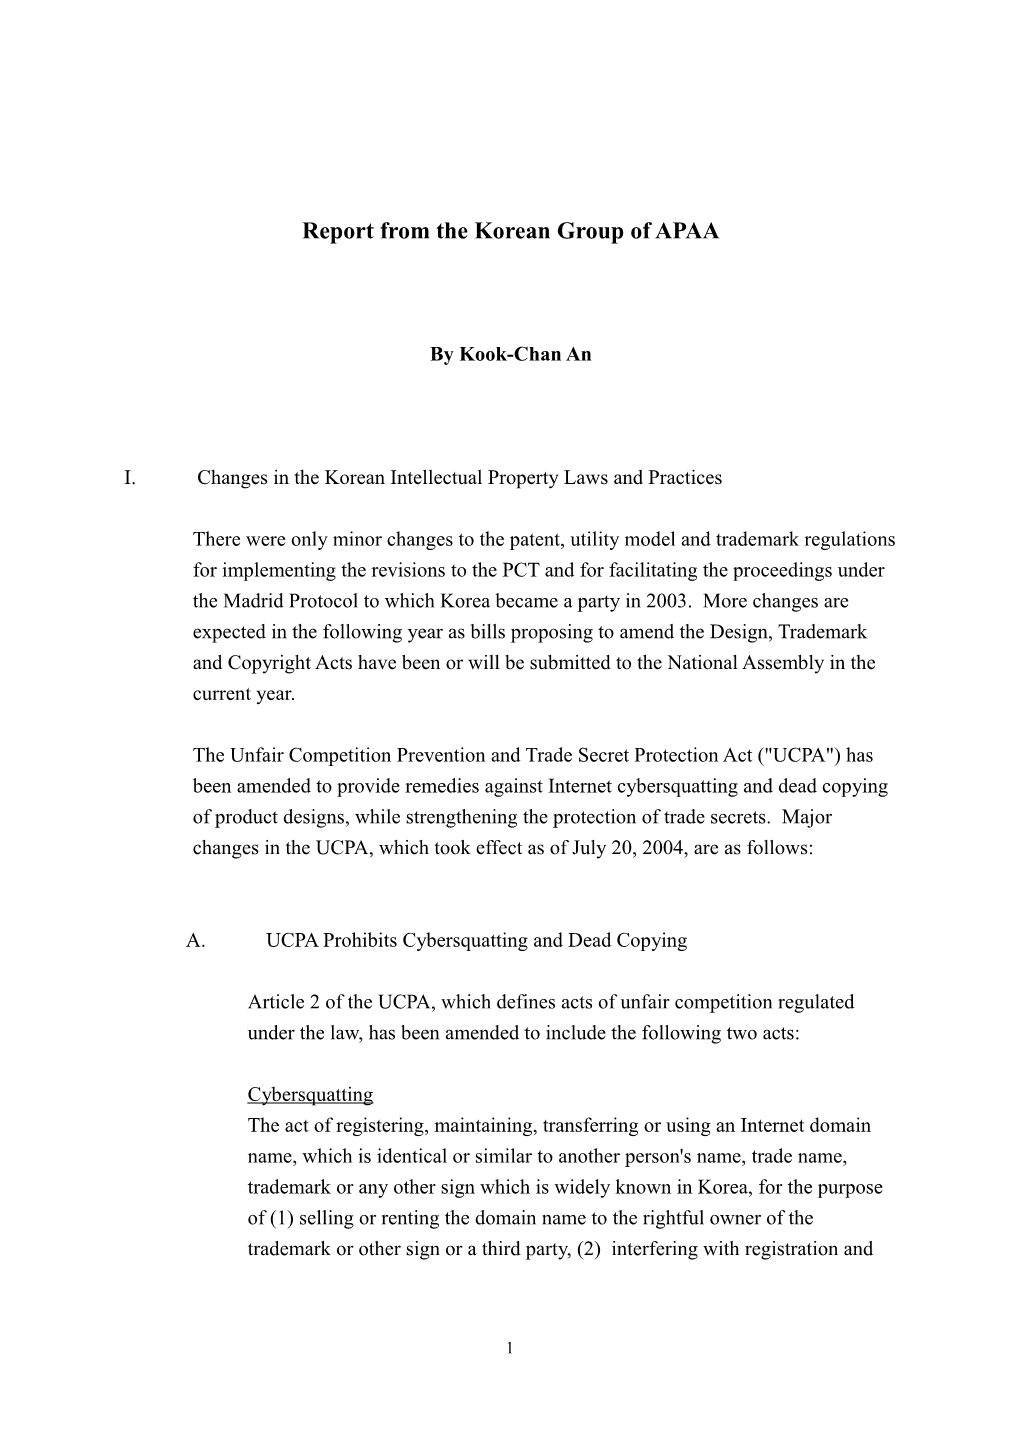 Report of Korean Group of APAA